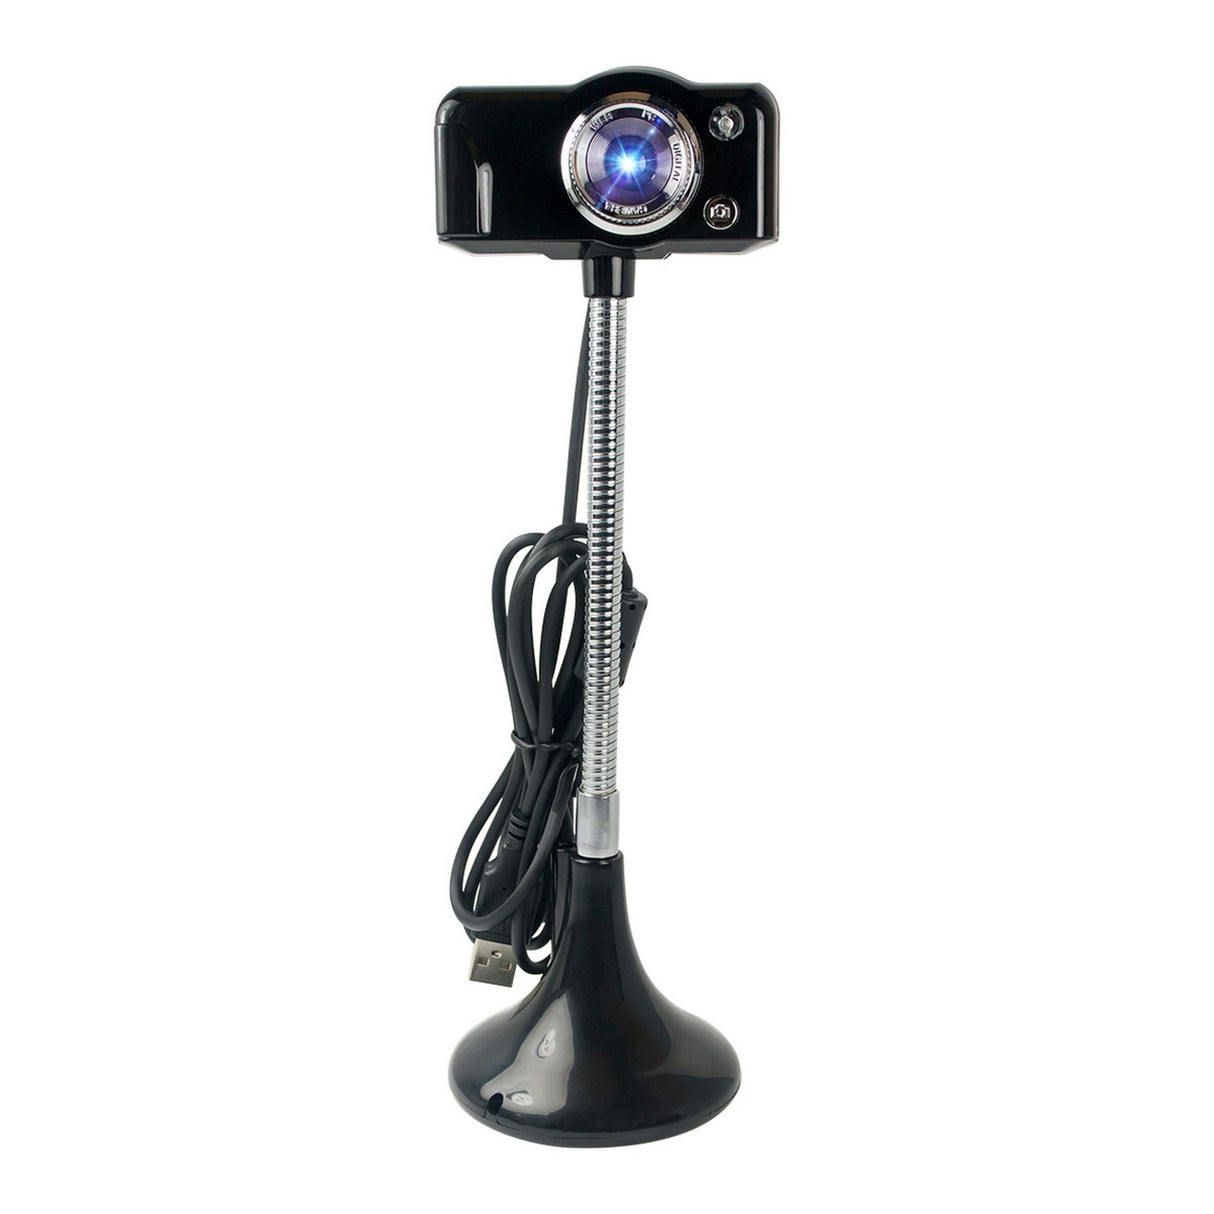 HamiltonBuhl SuperFlix 720p HD Webcam